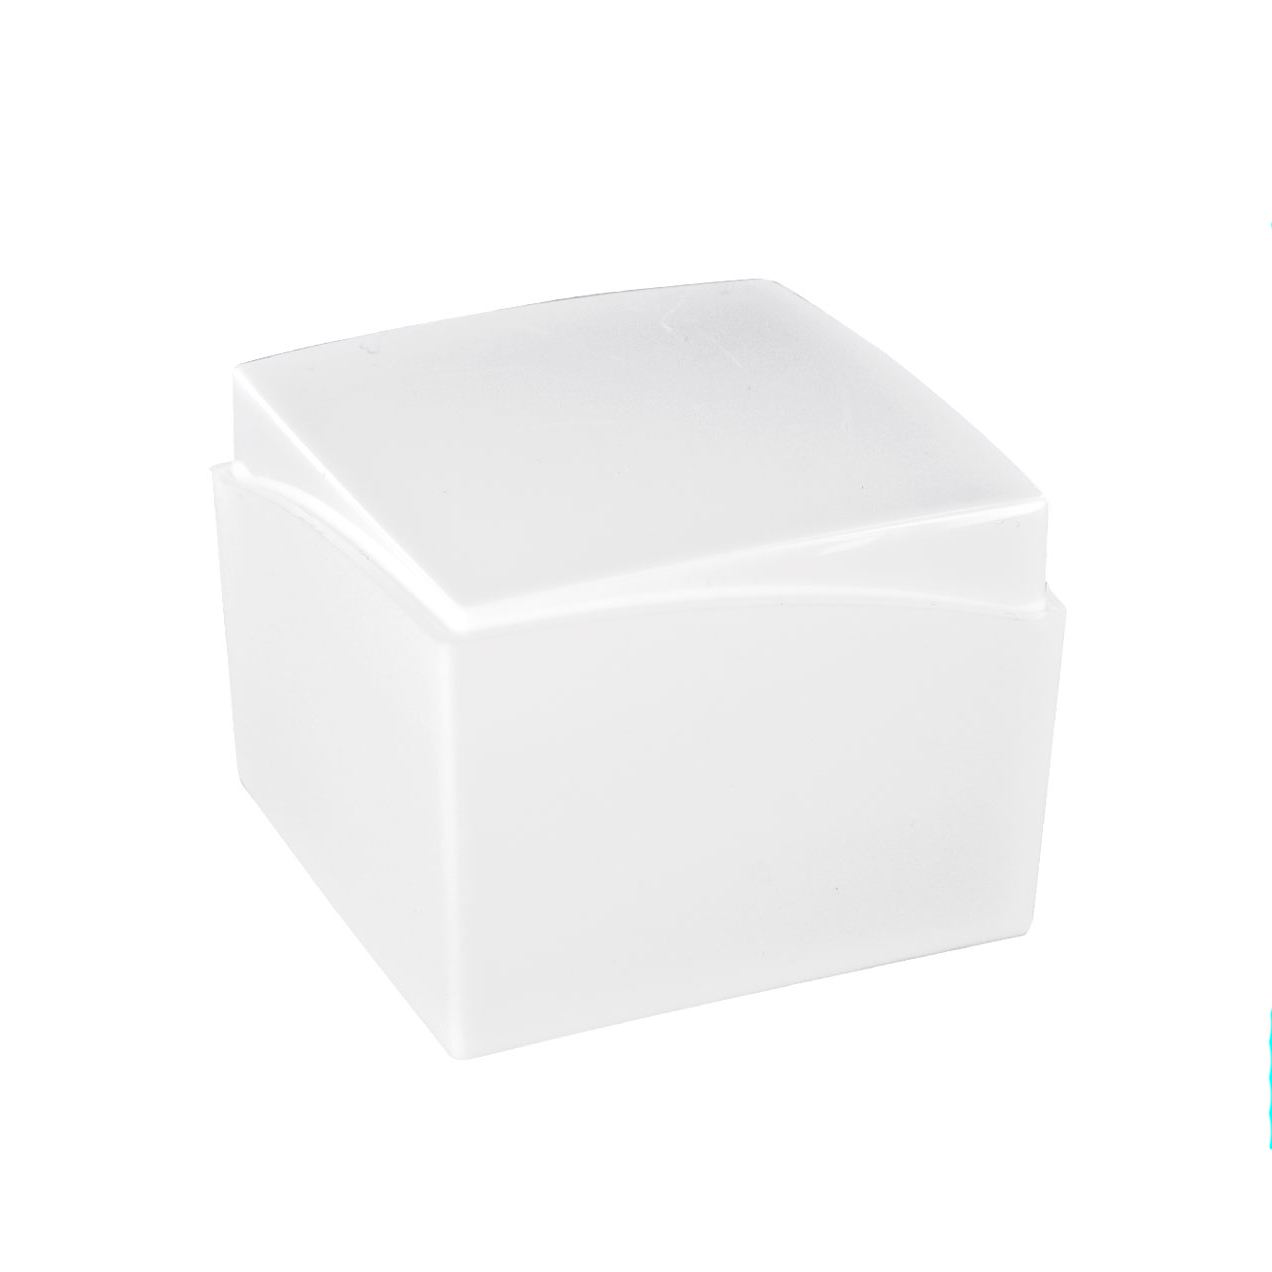 White matt and gloss finish plastic ring box